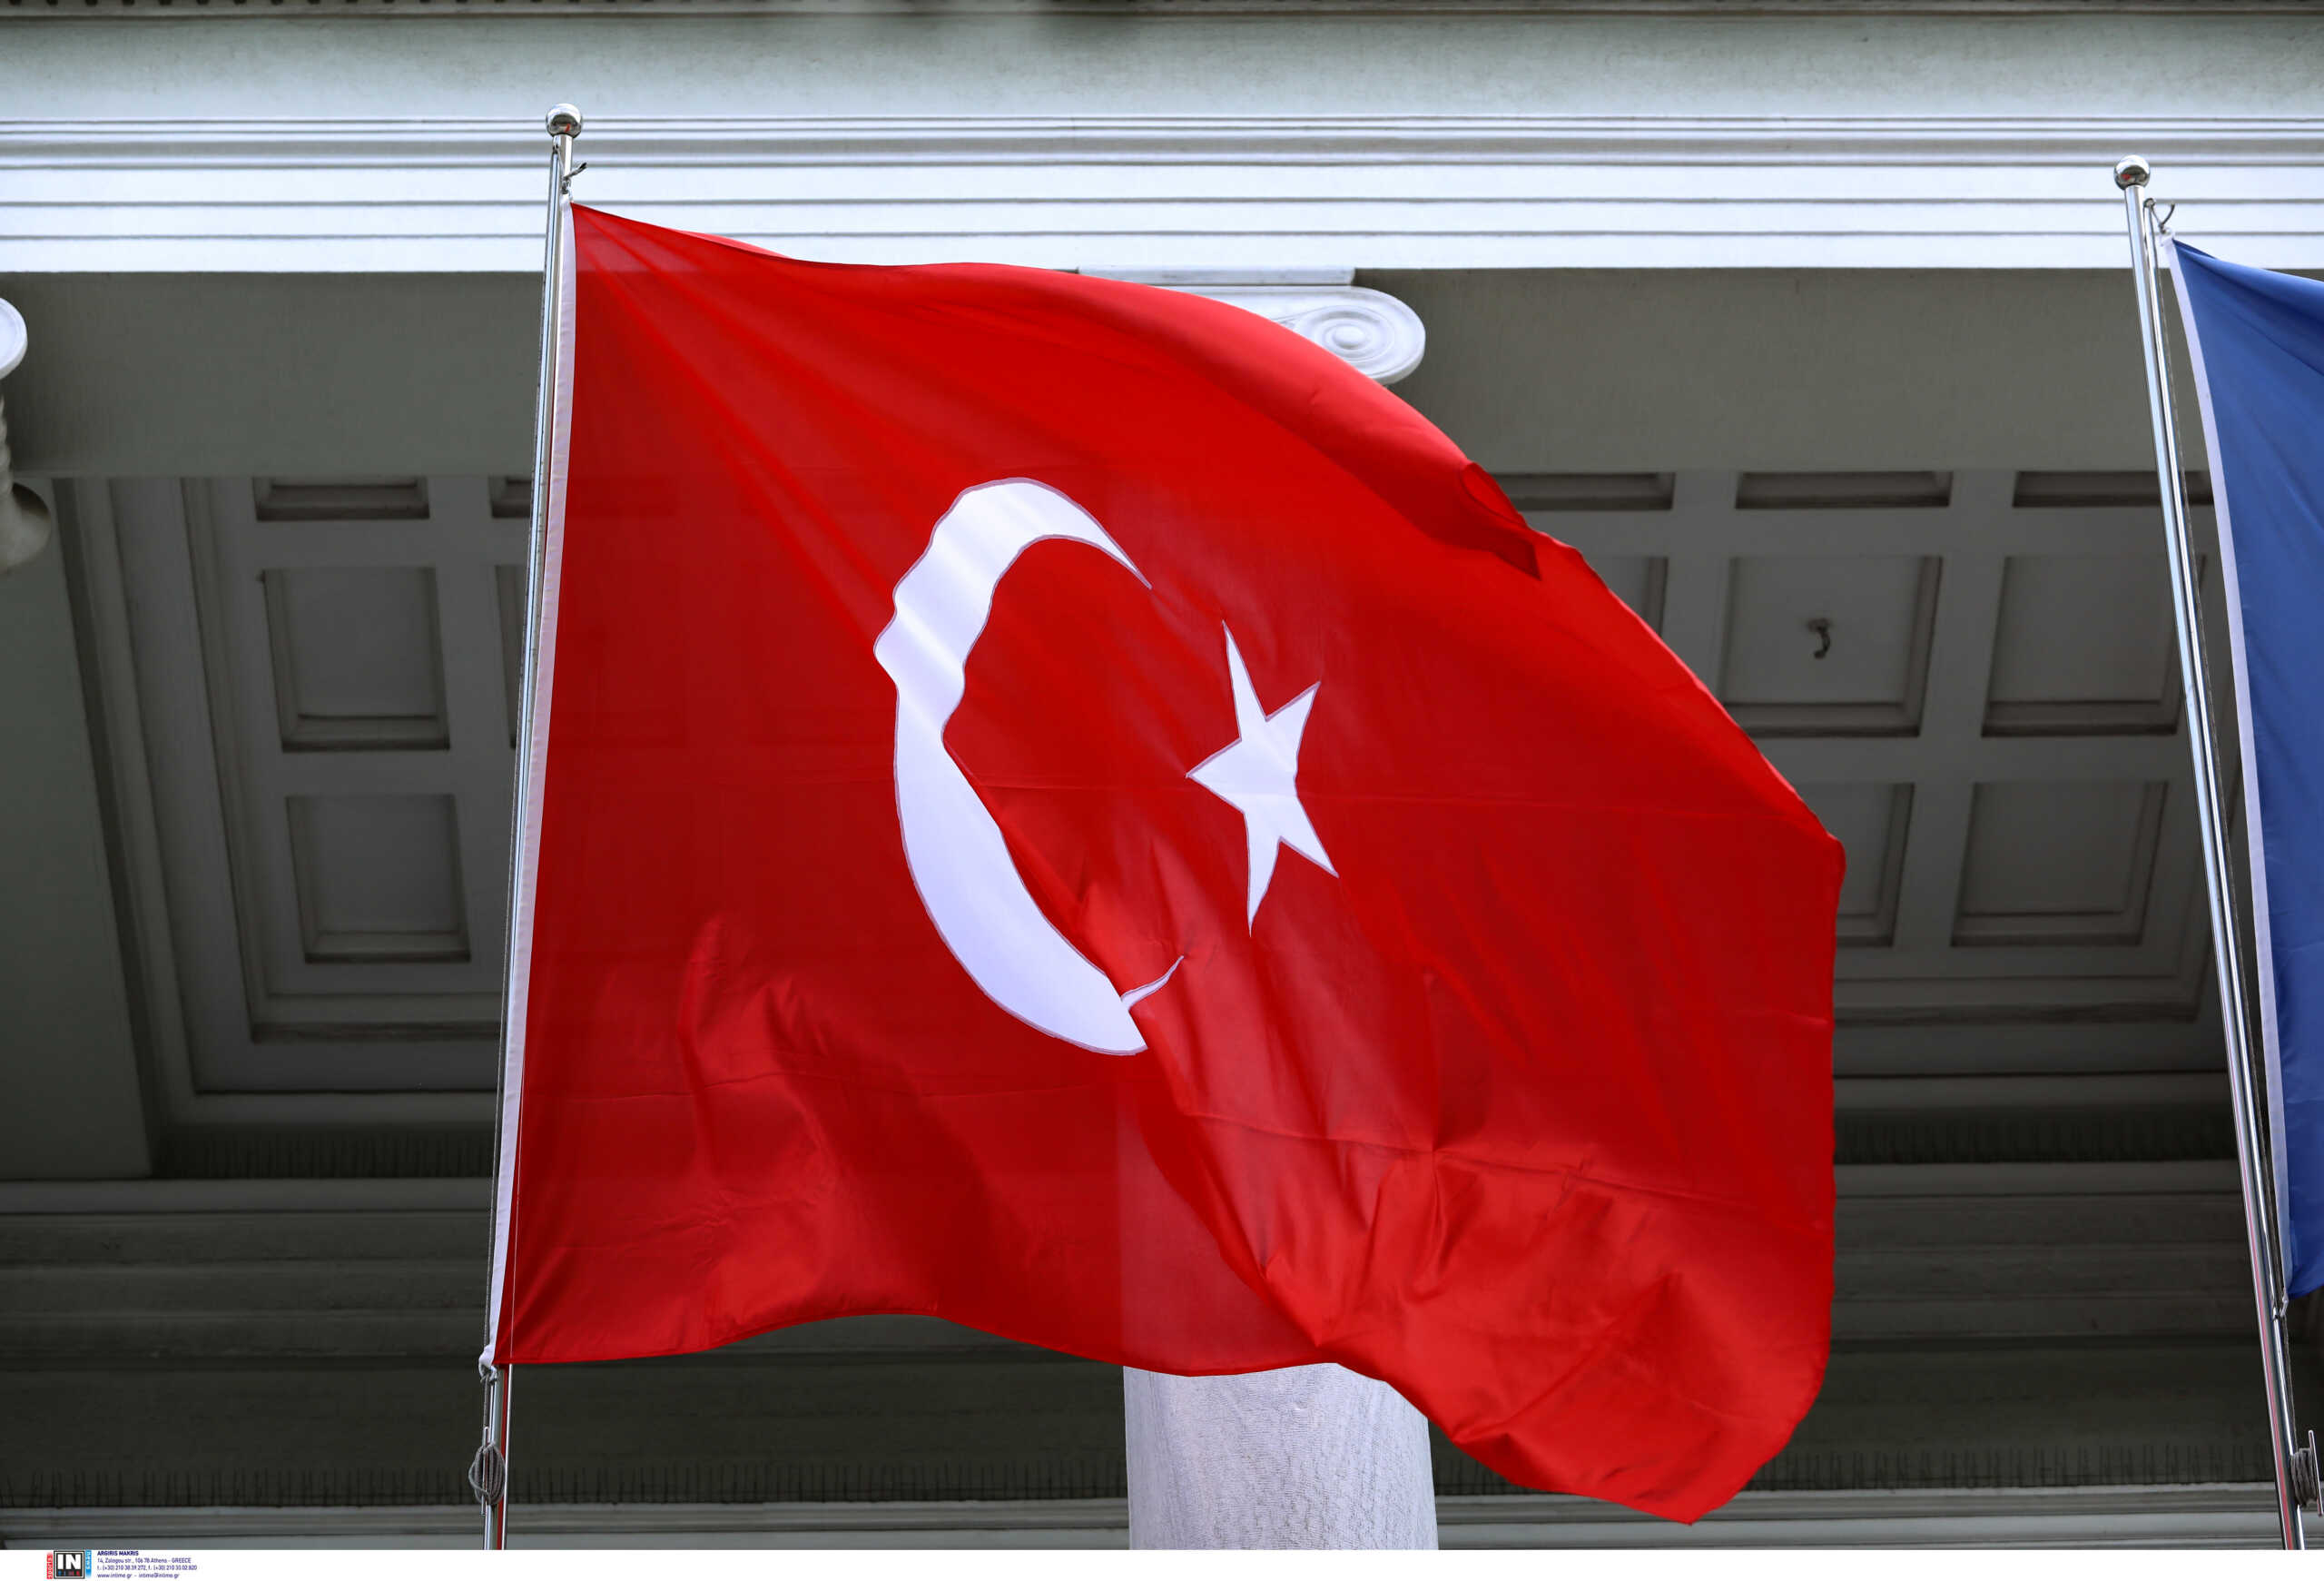 Τουρκία: Η αντιπολίτευση θα «ψαλιδίσει» τις εξουσίες του προέδρου αν κερδίσει τις εκλογές